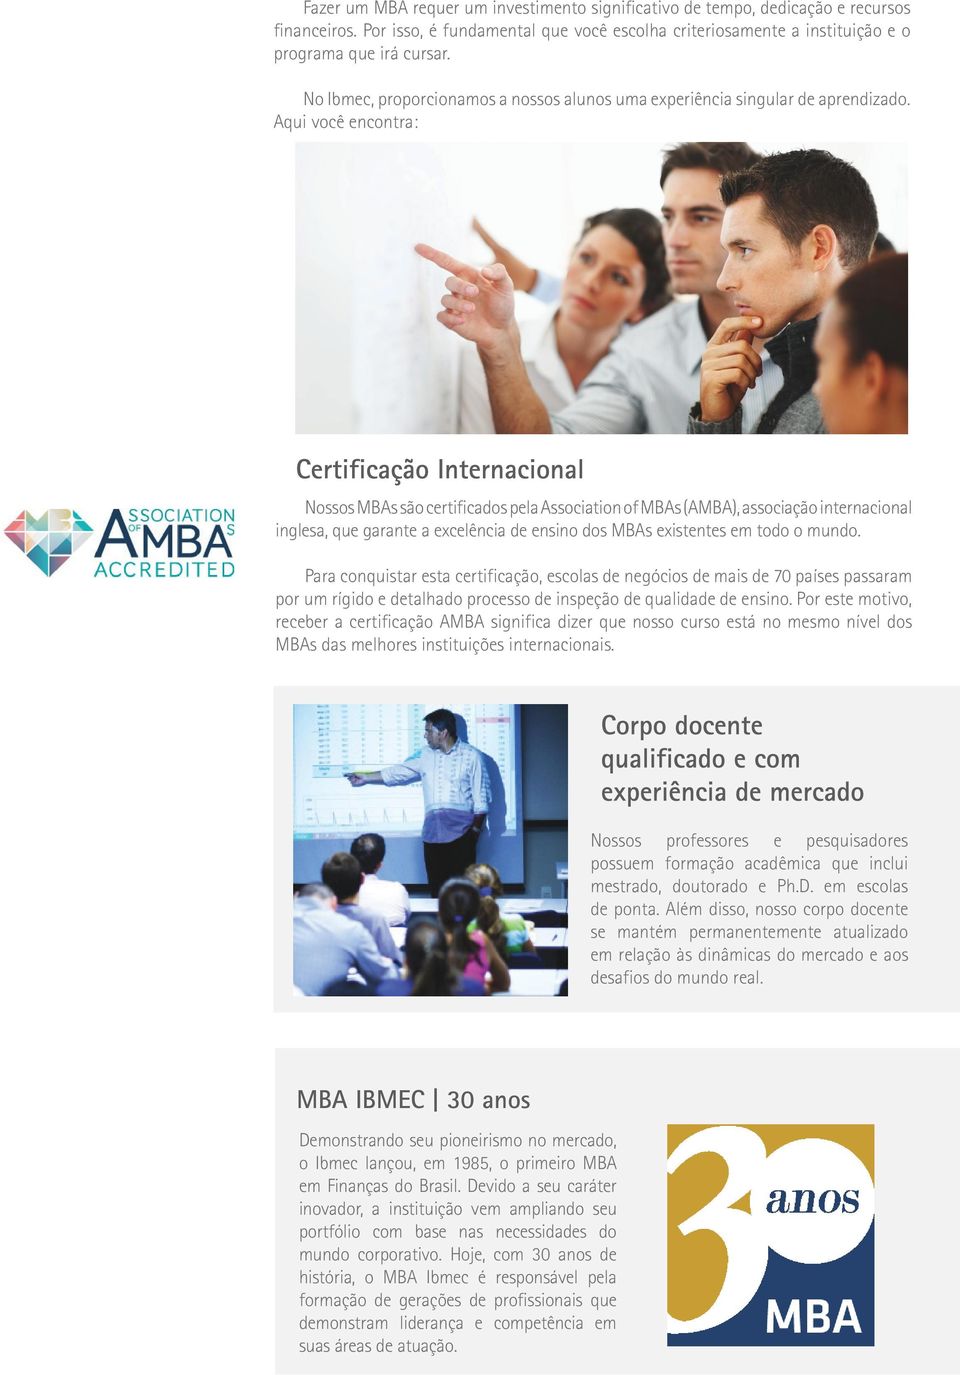 Aqui você encontra: Nossos MBAs são certificados pela Association of MBAs (AMBA), associação internacional inglesa, que garante a excelência de ensino dos MBAs existentes em todo o mundo.